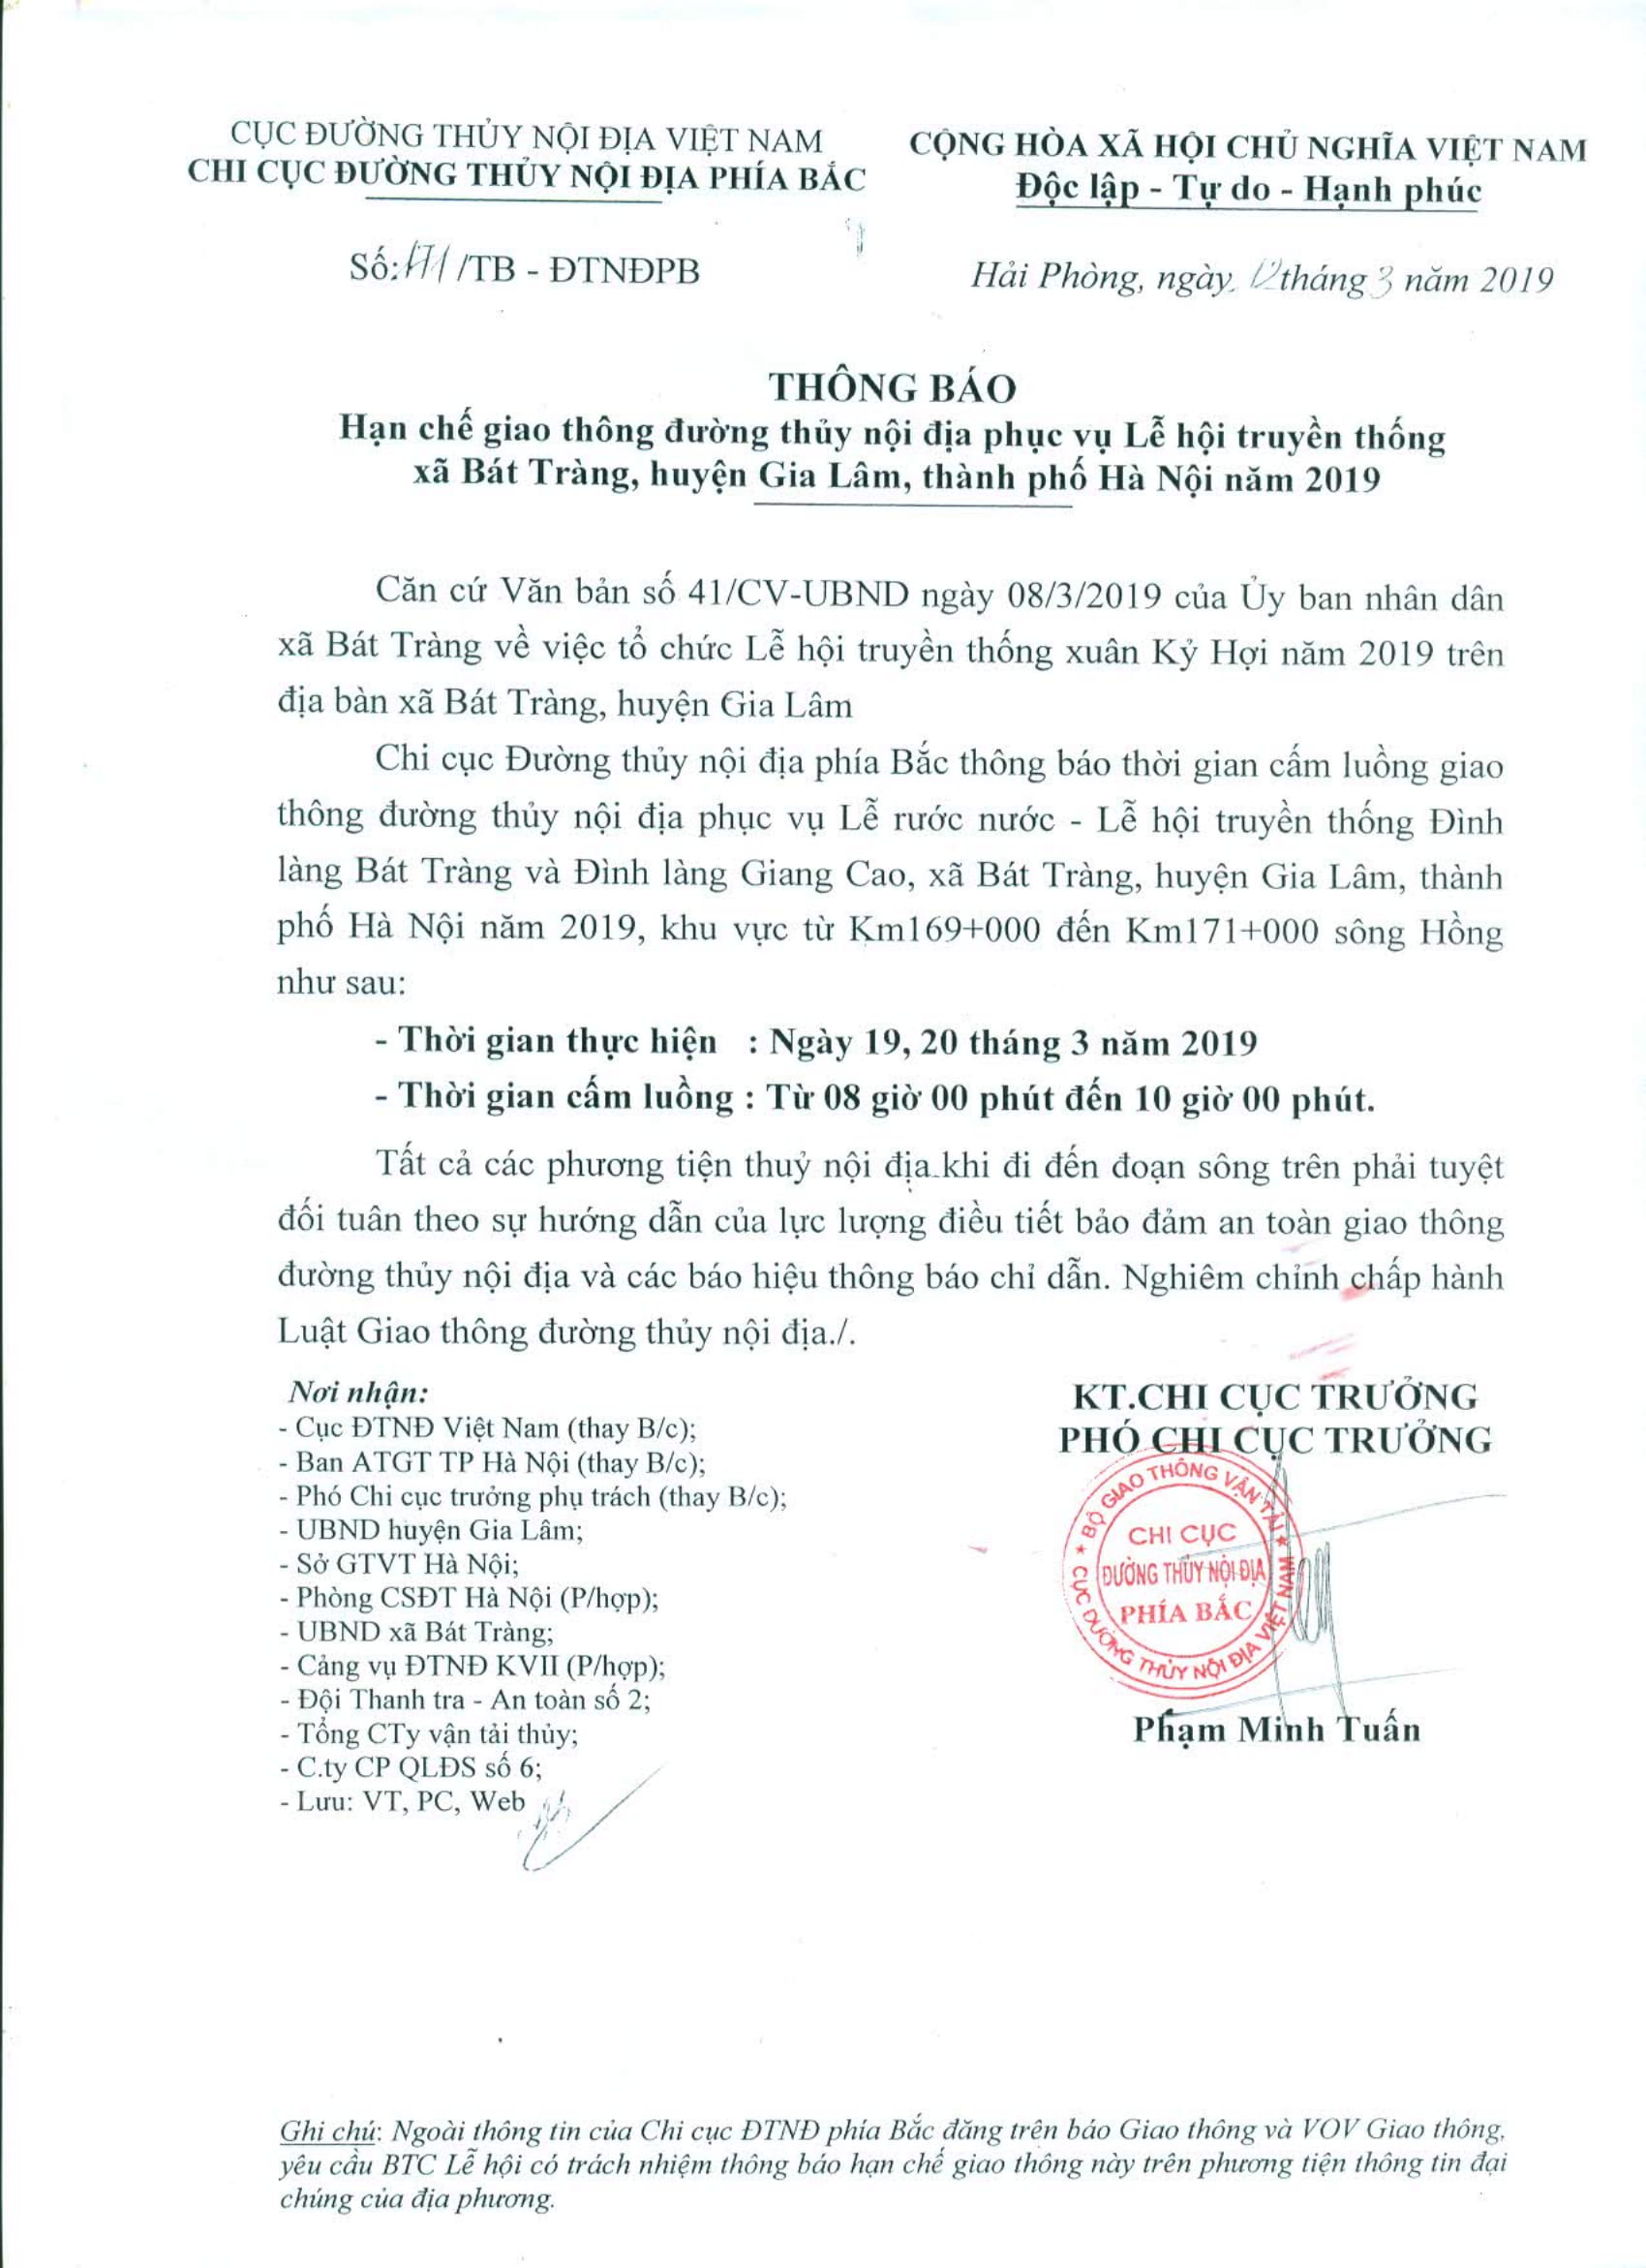 Thông báo HCGT ĐTNĐ sông Hồng, khu vực km 169+000 đến km 171+000 (ngày 19, 20/4/2019), phục vụ Lế rước nước - Lễ hội truyền thống Đình làng Bát Tràng